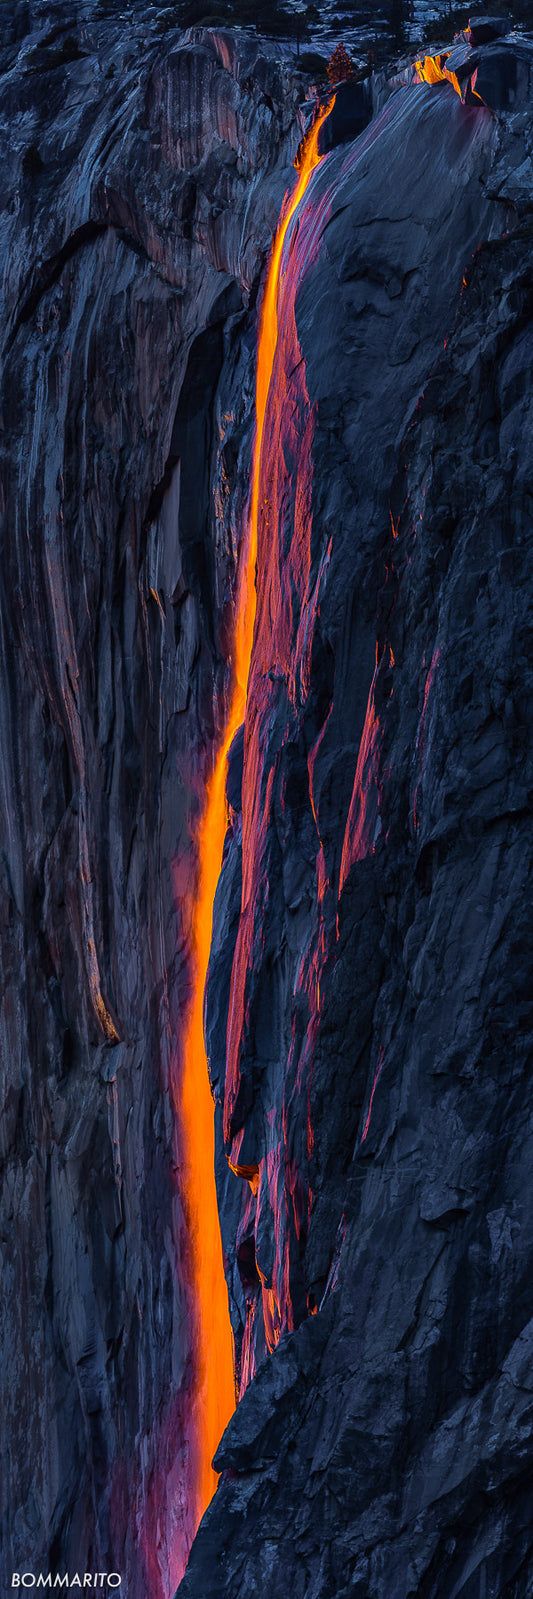 Yosemite Fire fall fine art photography print